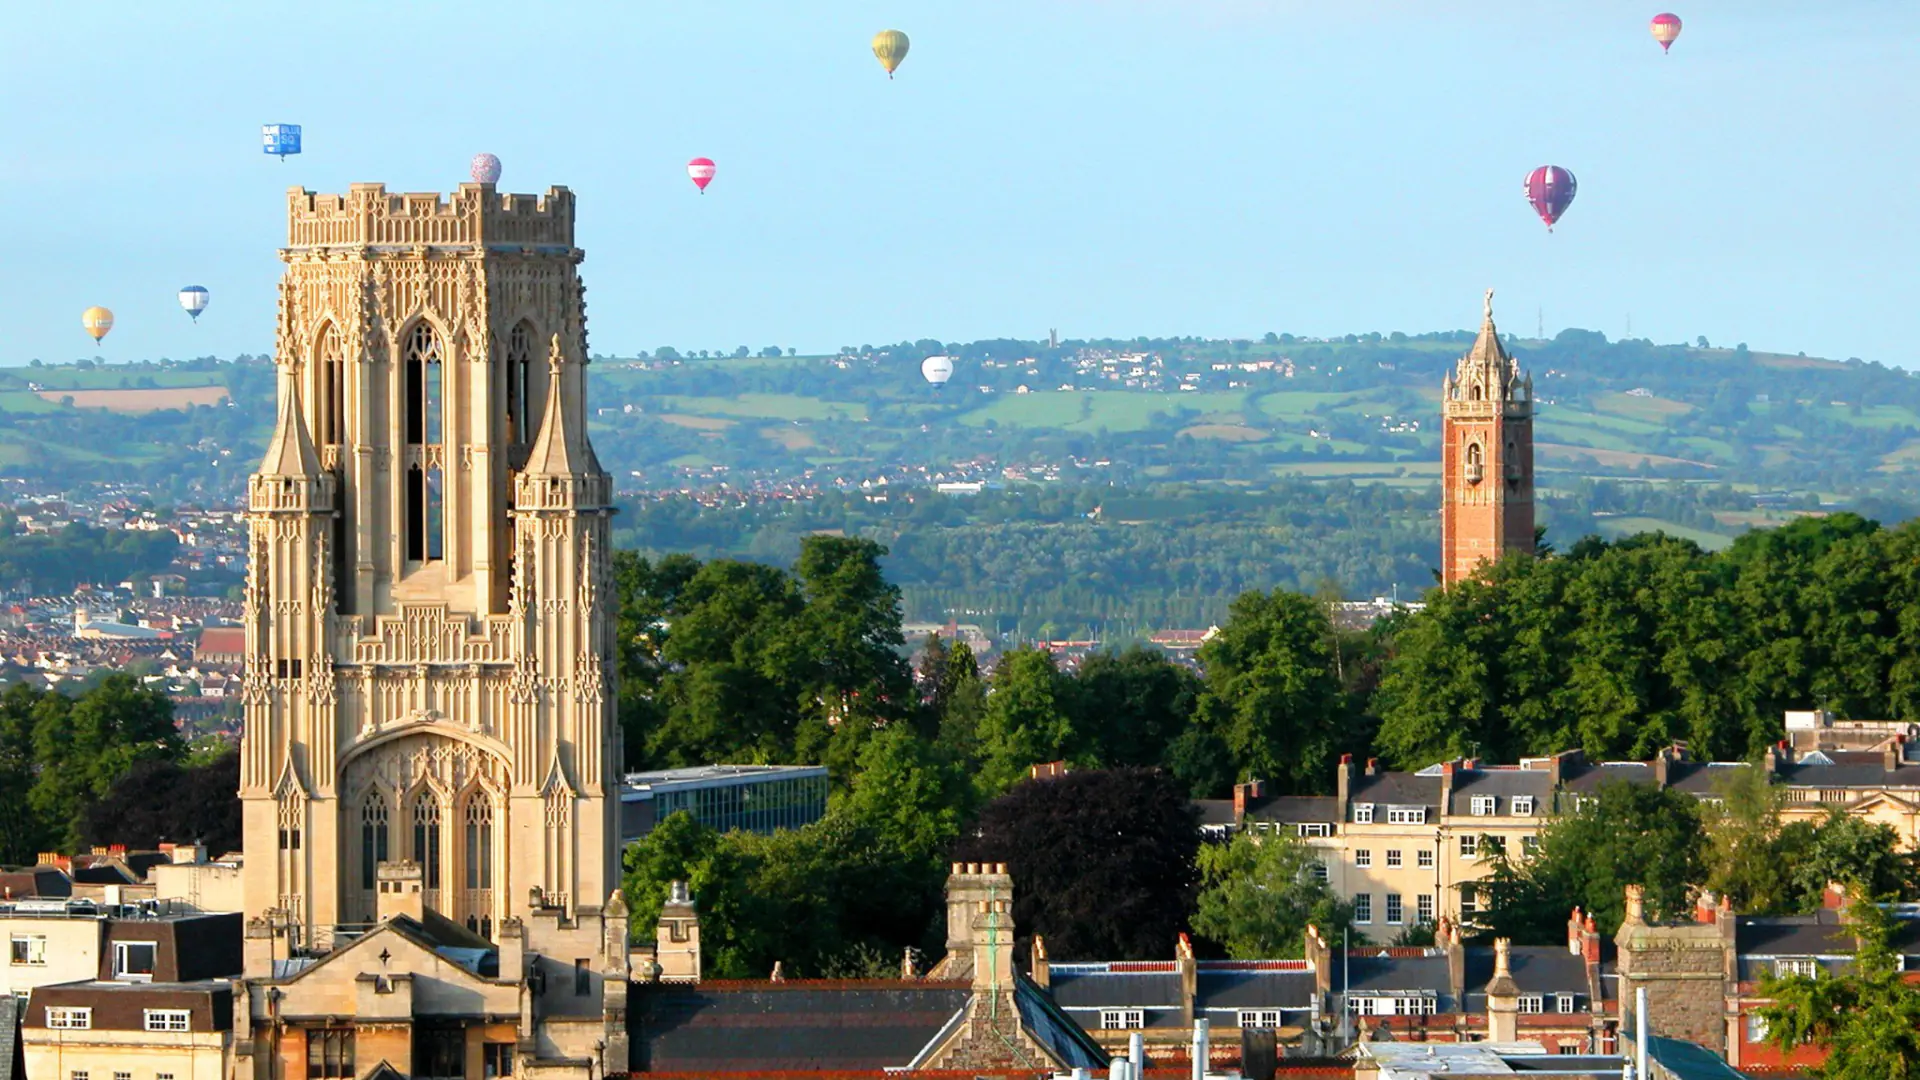 Buyuk Britaniyada dunyoning Top 100 talik universitetlar qatoriga kiruvchi Bristol Universitetida bakalavr va magistratura bosqichida o'qish uchun “Think Big” stipendiya dasturi